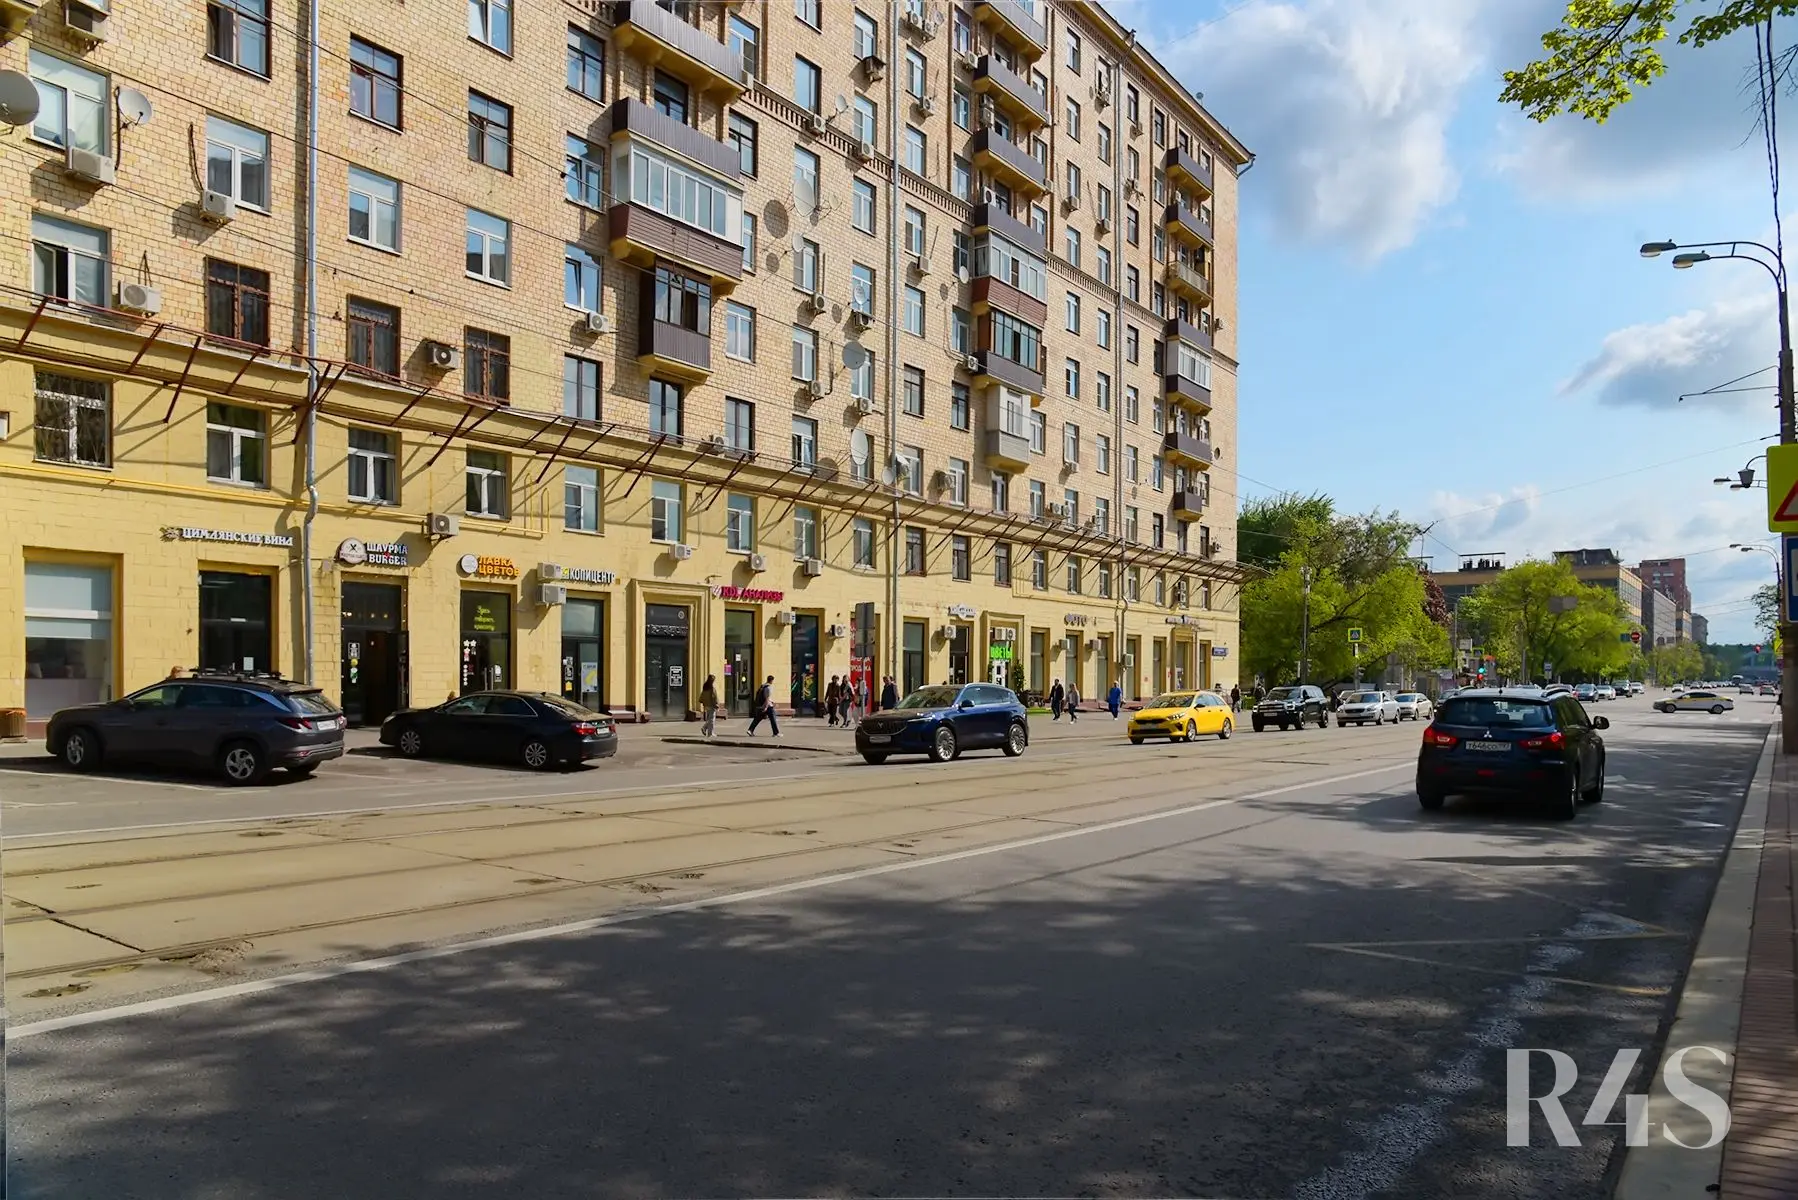 Аренда торговых помещений площадью 19.3 - 205.2 м2 в Москве:  Щербаковская, 35 R4S | Realty4Sale